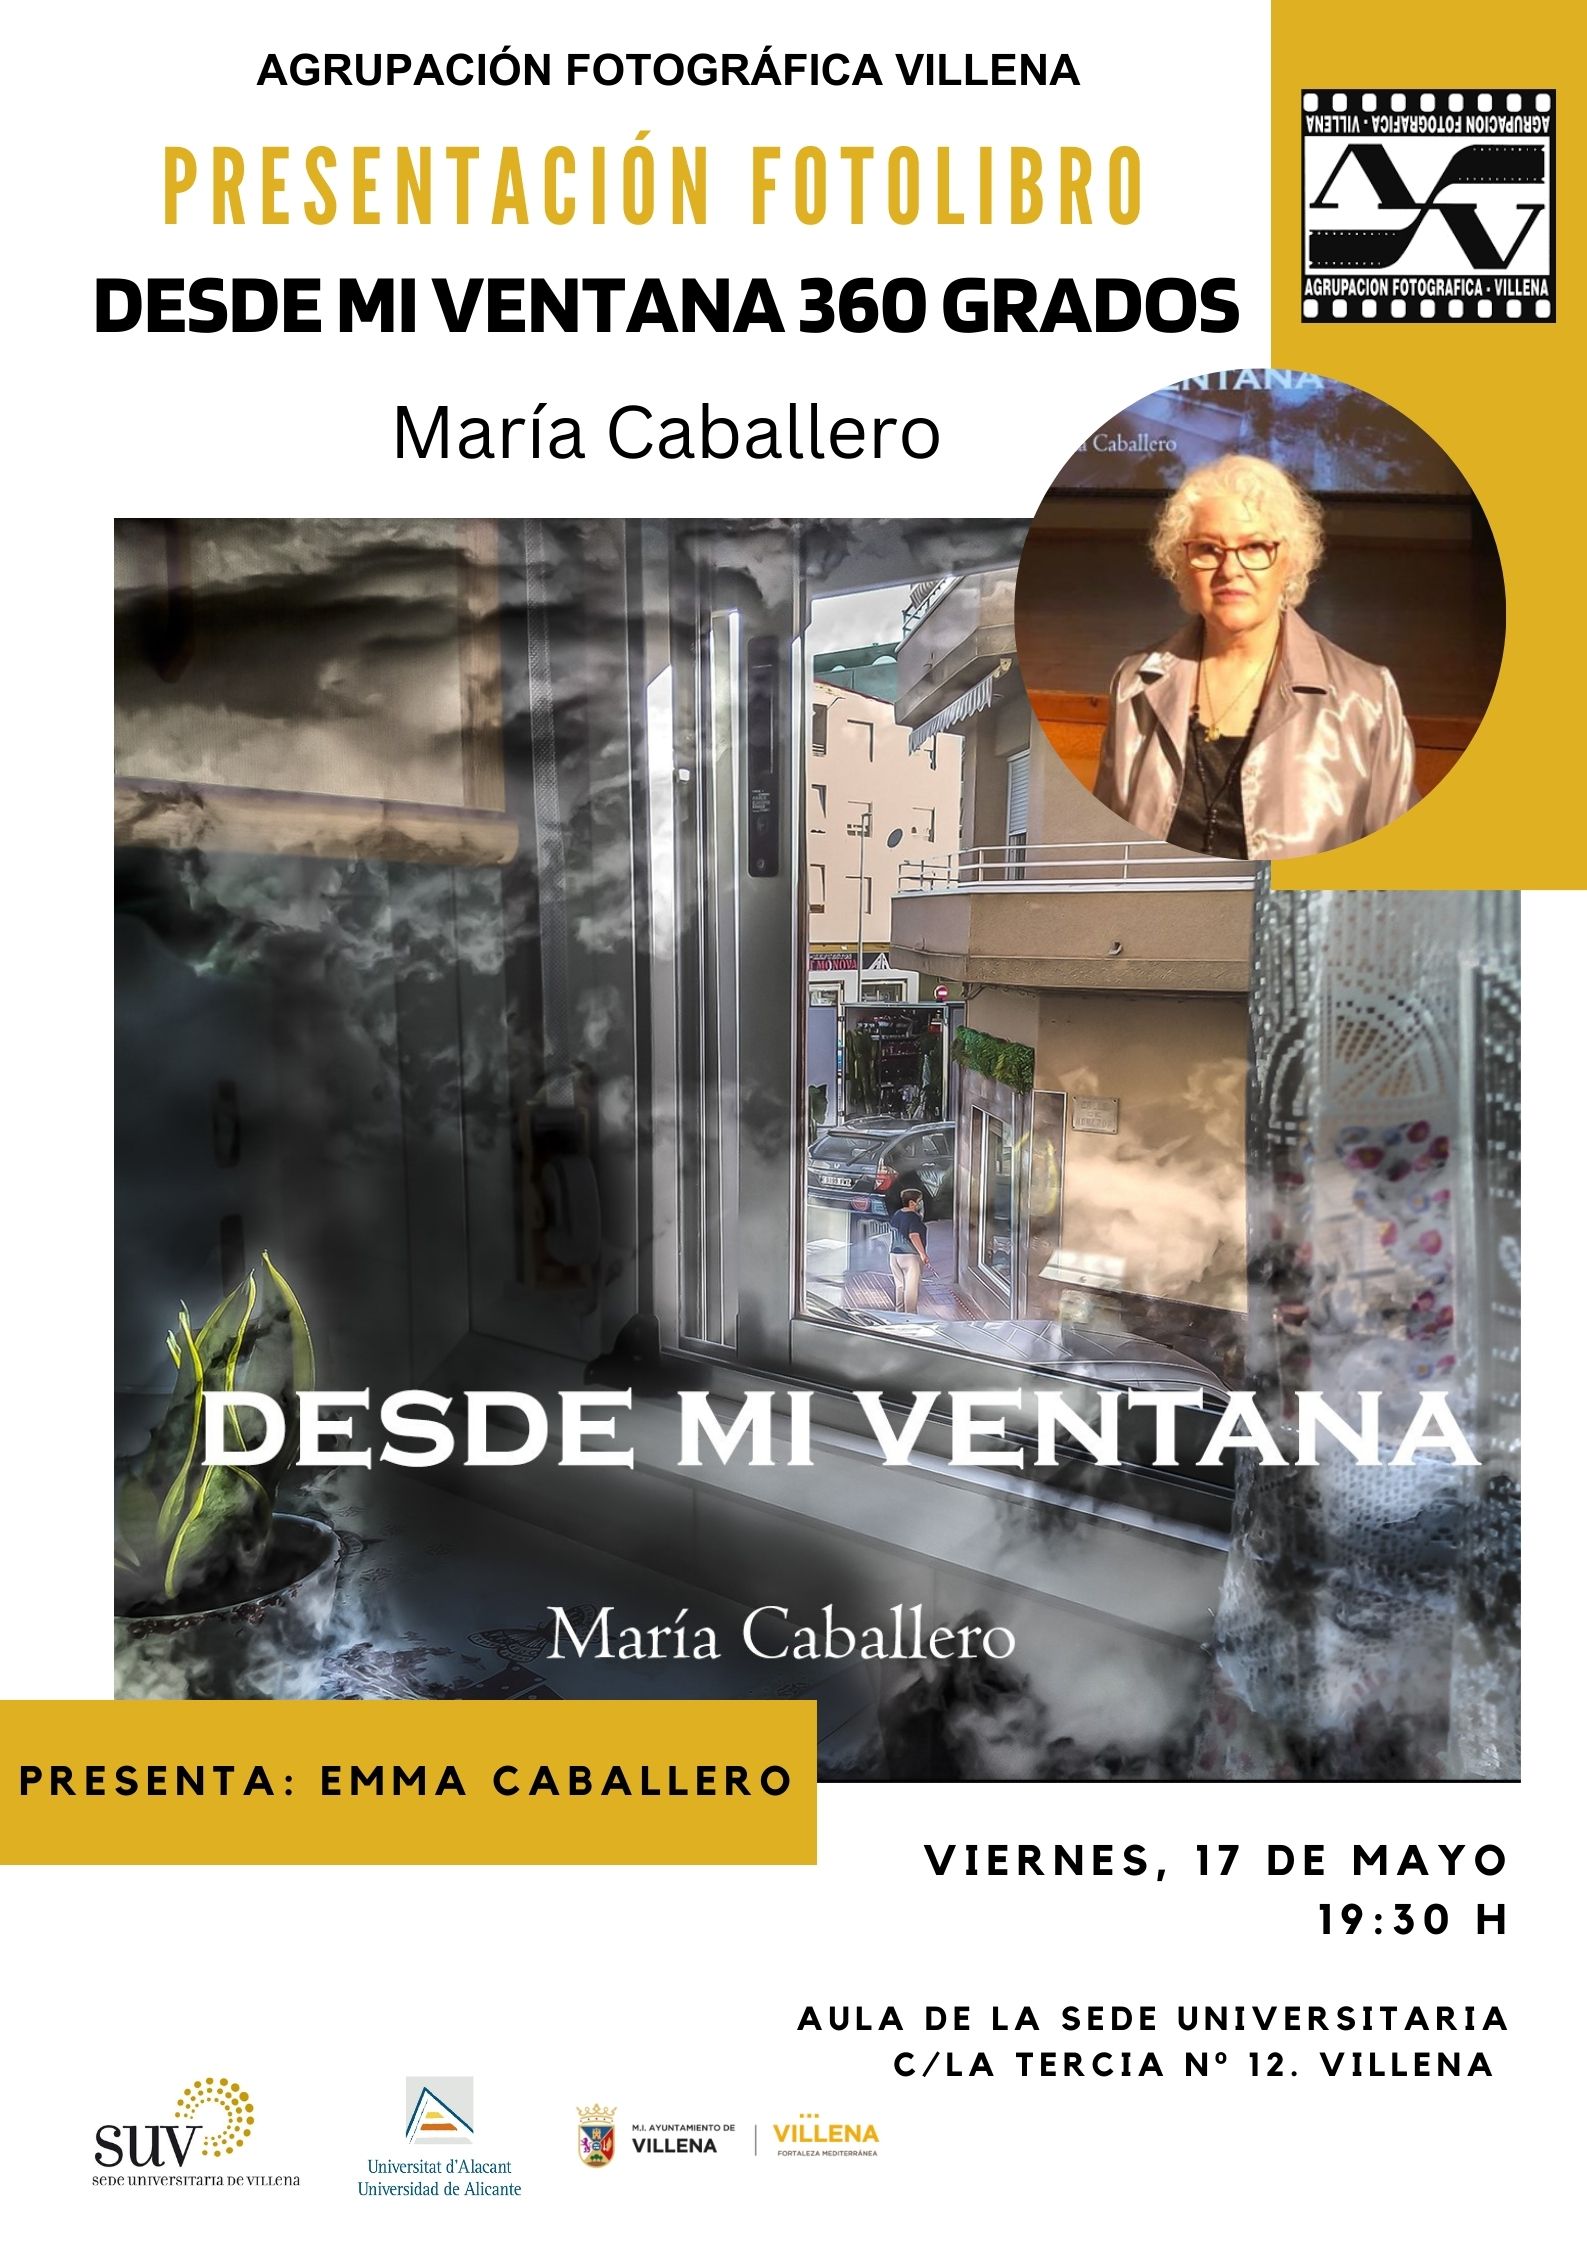 Presentación del foto libro “Desde mi ventana 360 grados” de María Caballero